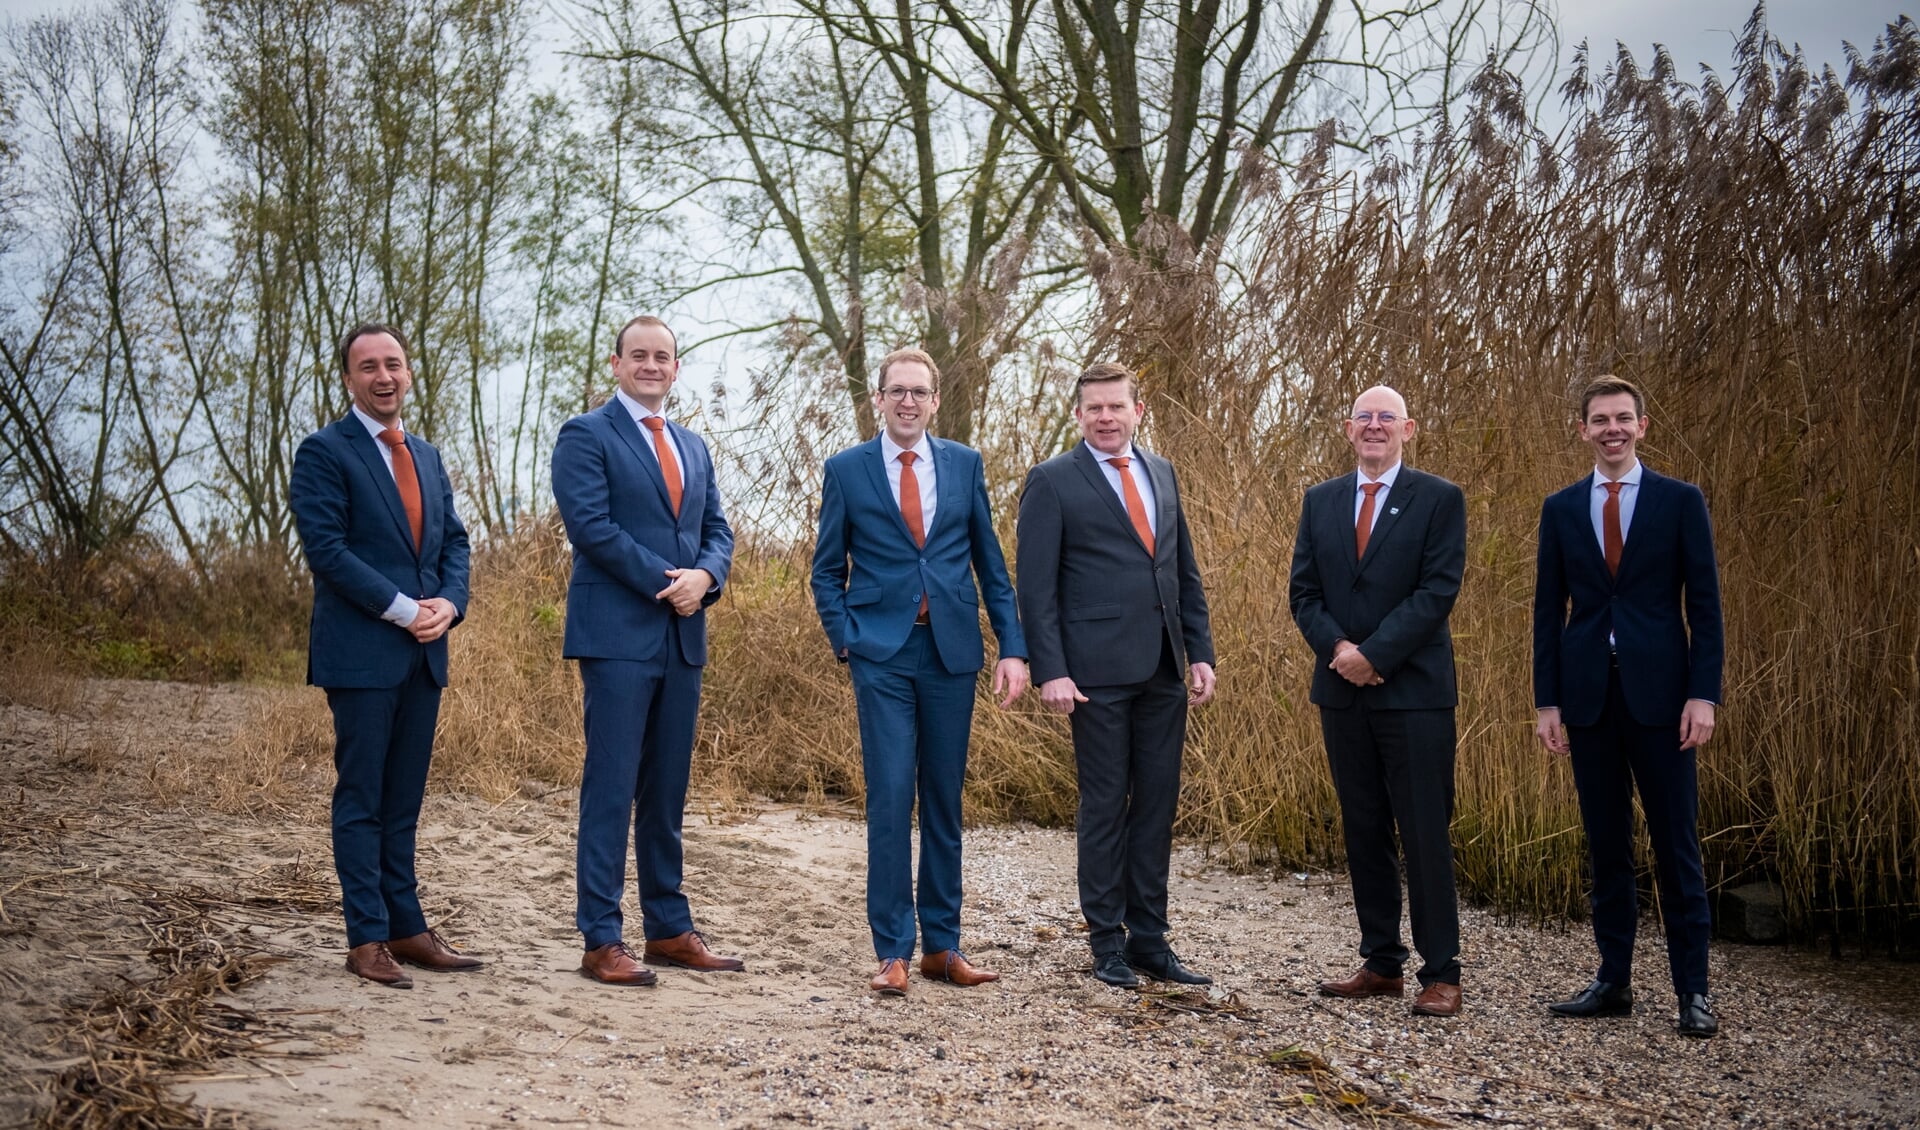 Op de foto staan van links naar rechts: Cees Lock, Koen Schouten, Arjan Meerkerk, Erik van den Bosch, Arie van den Berg en Henri van Bennekom.